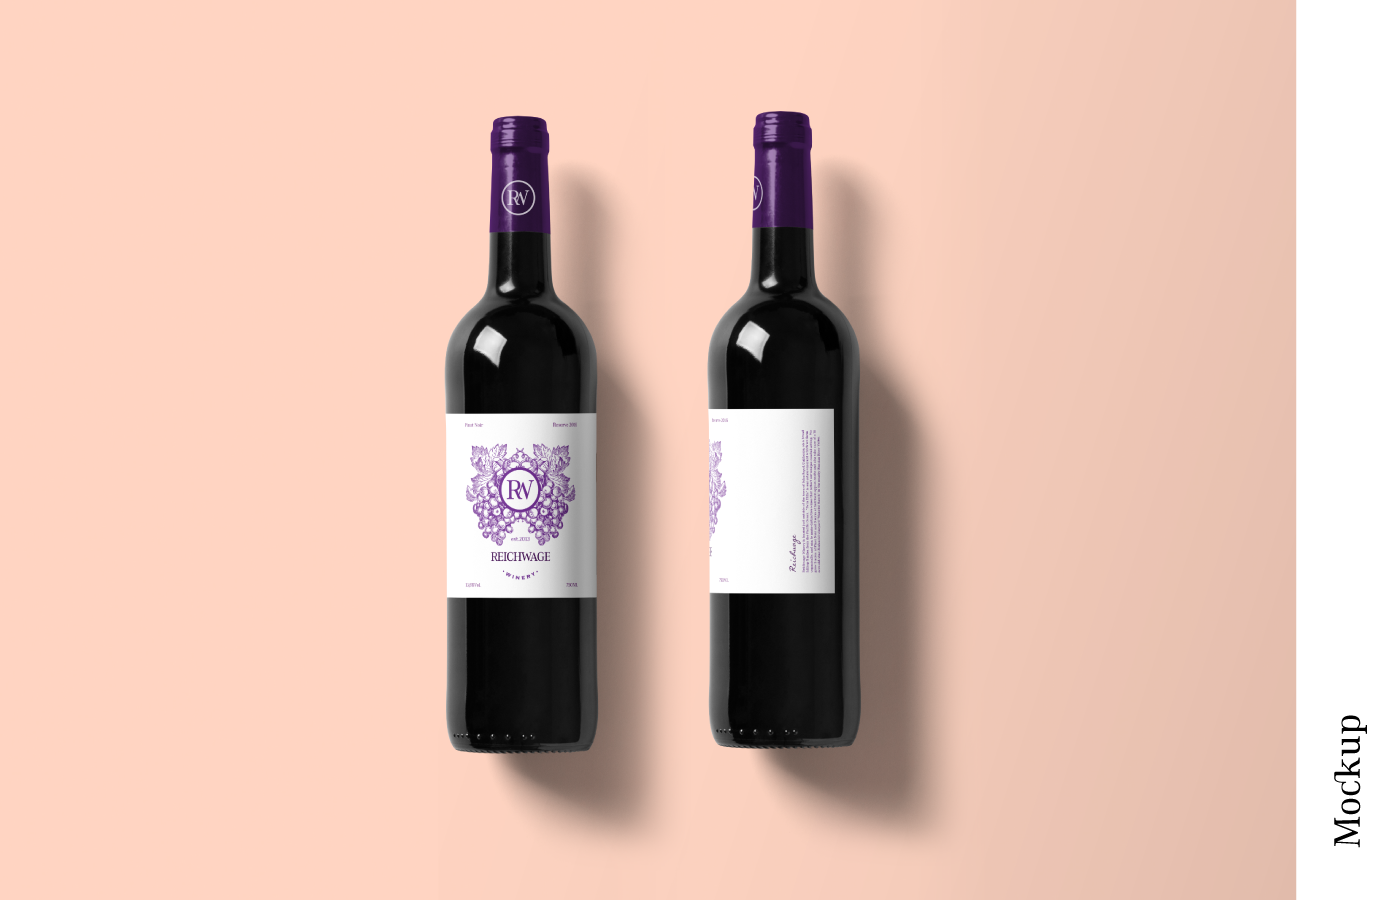 wine Label California Cali colombia liquor logo grapes